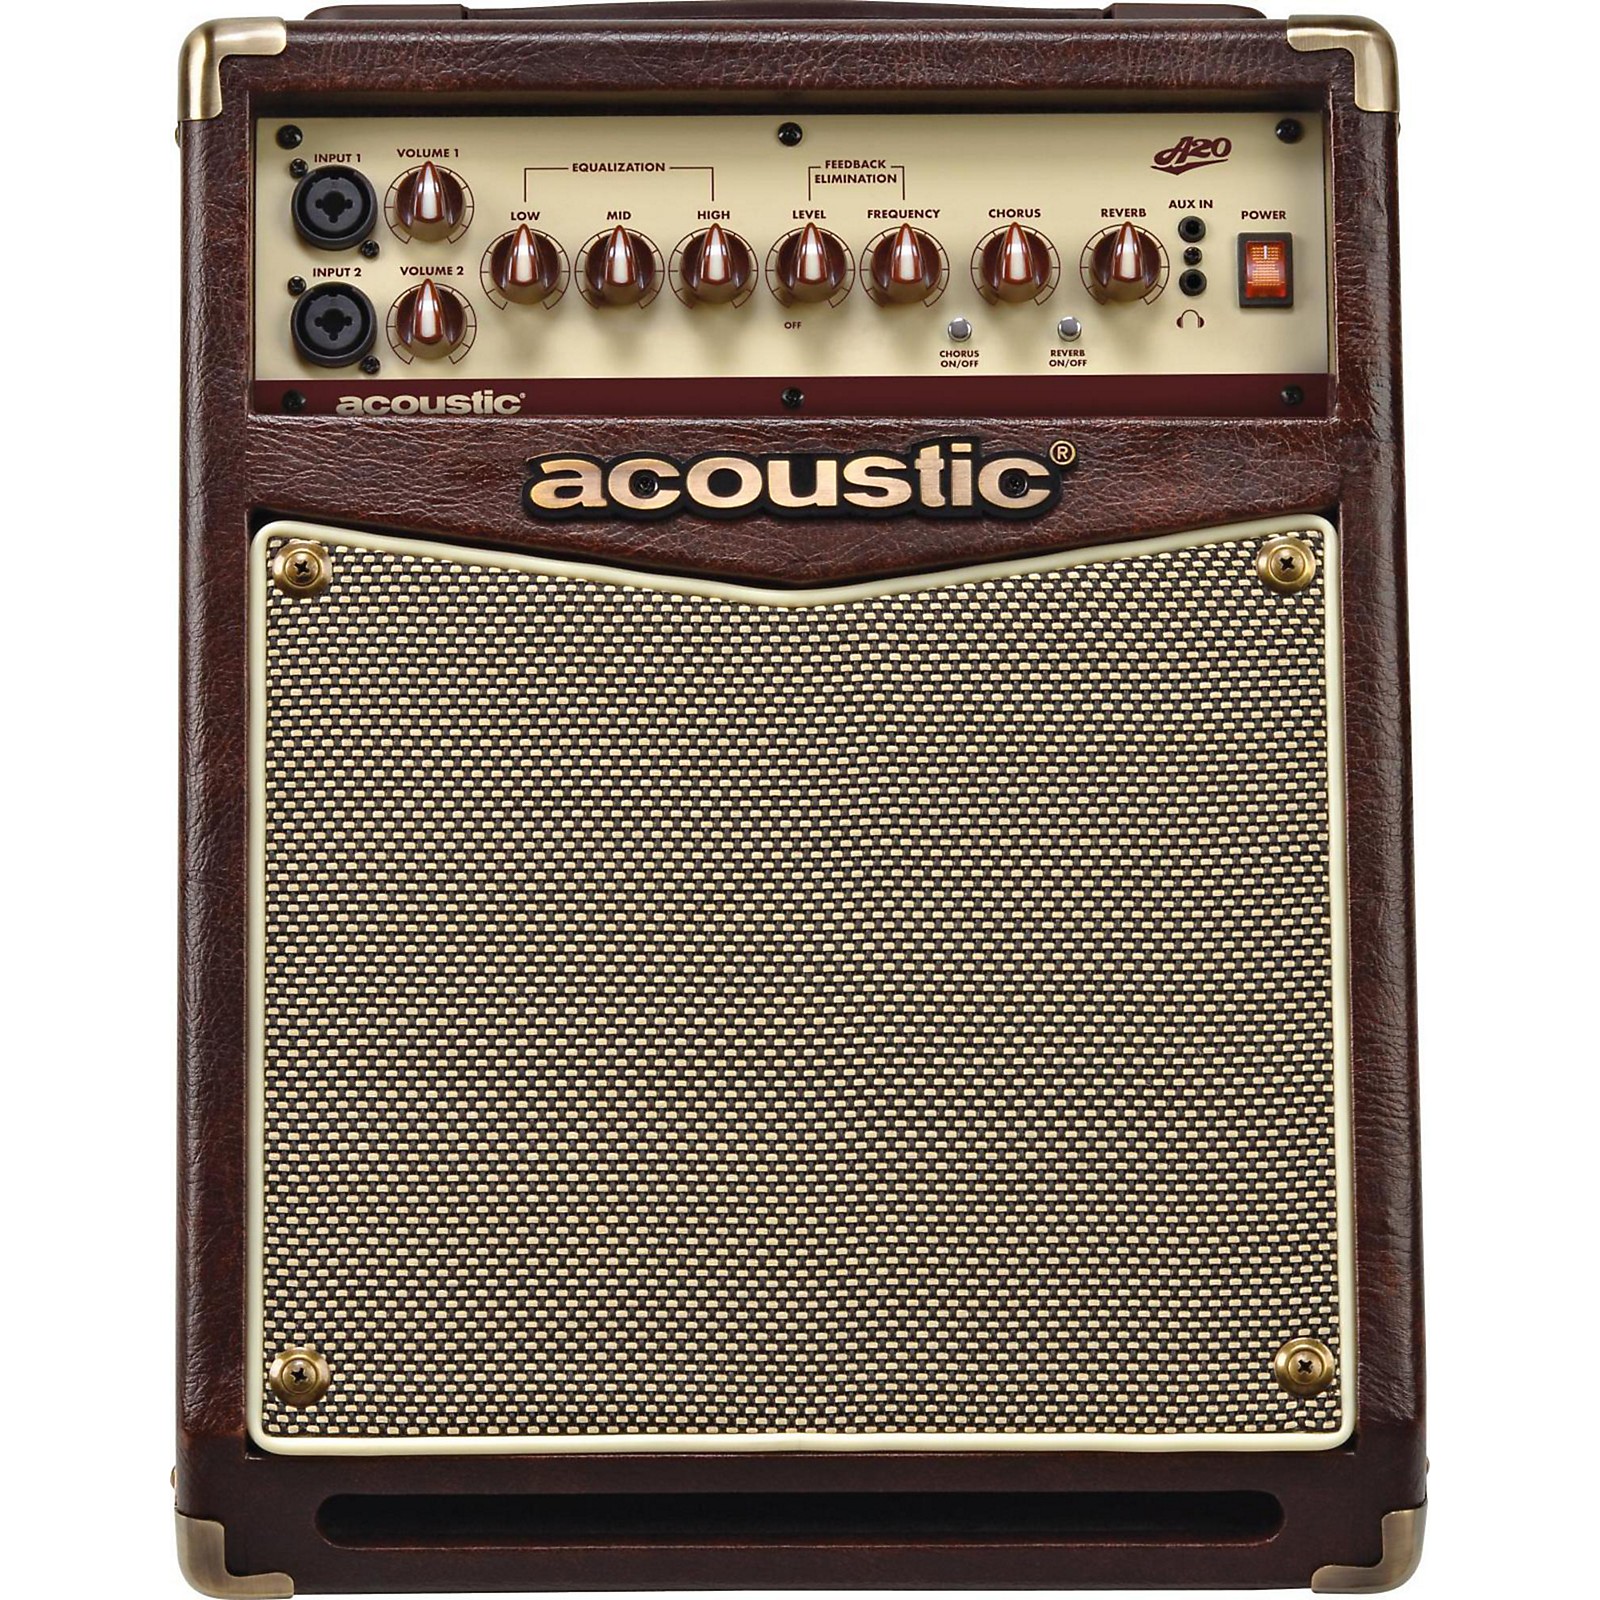 Acoustic Acoustic A20 20W Acoustic Guitar Amplifier